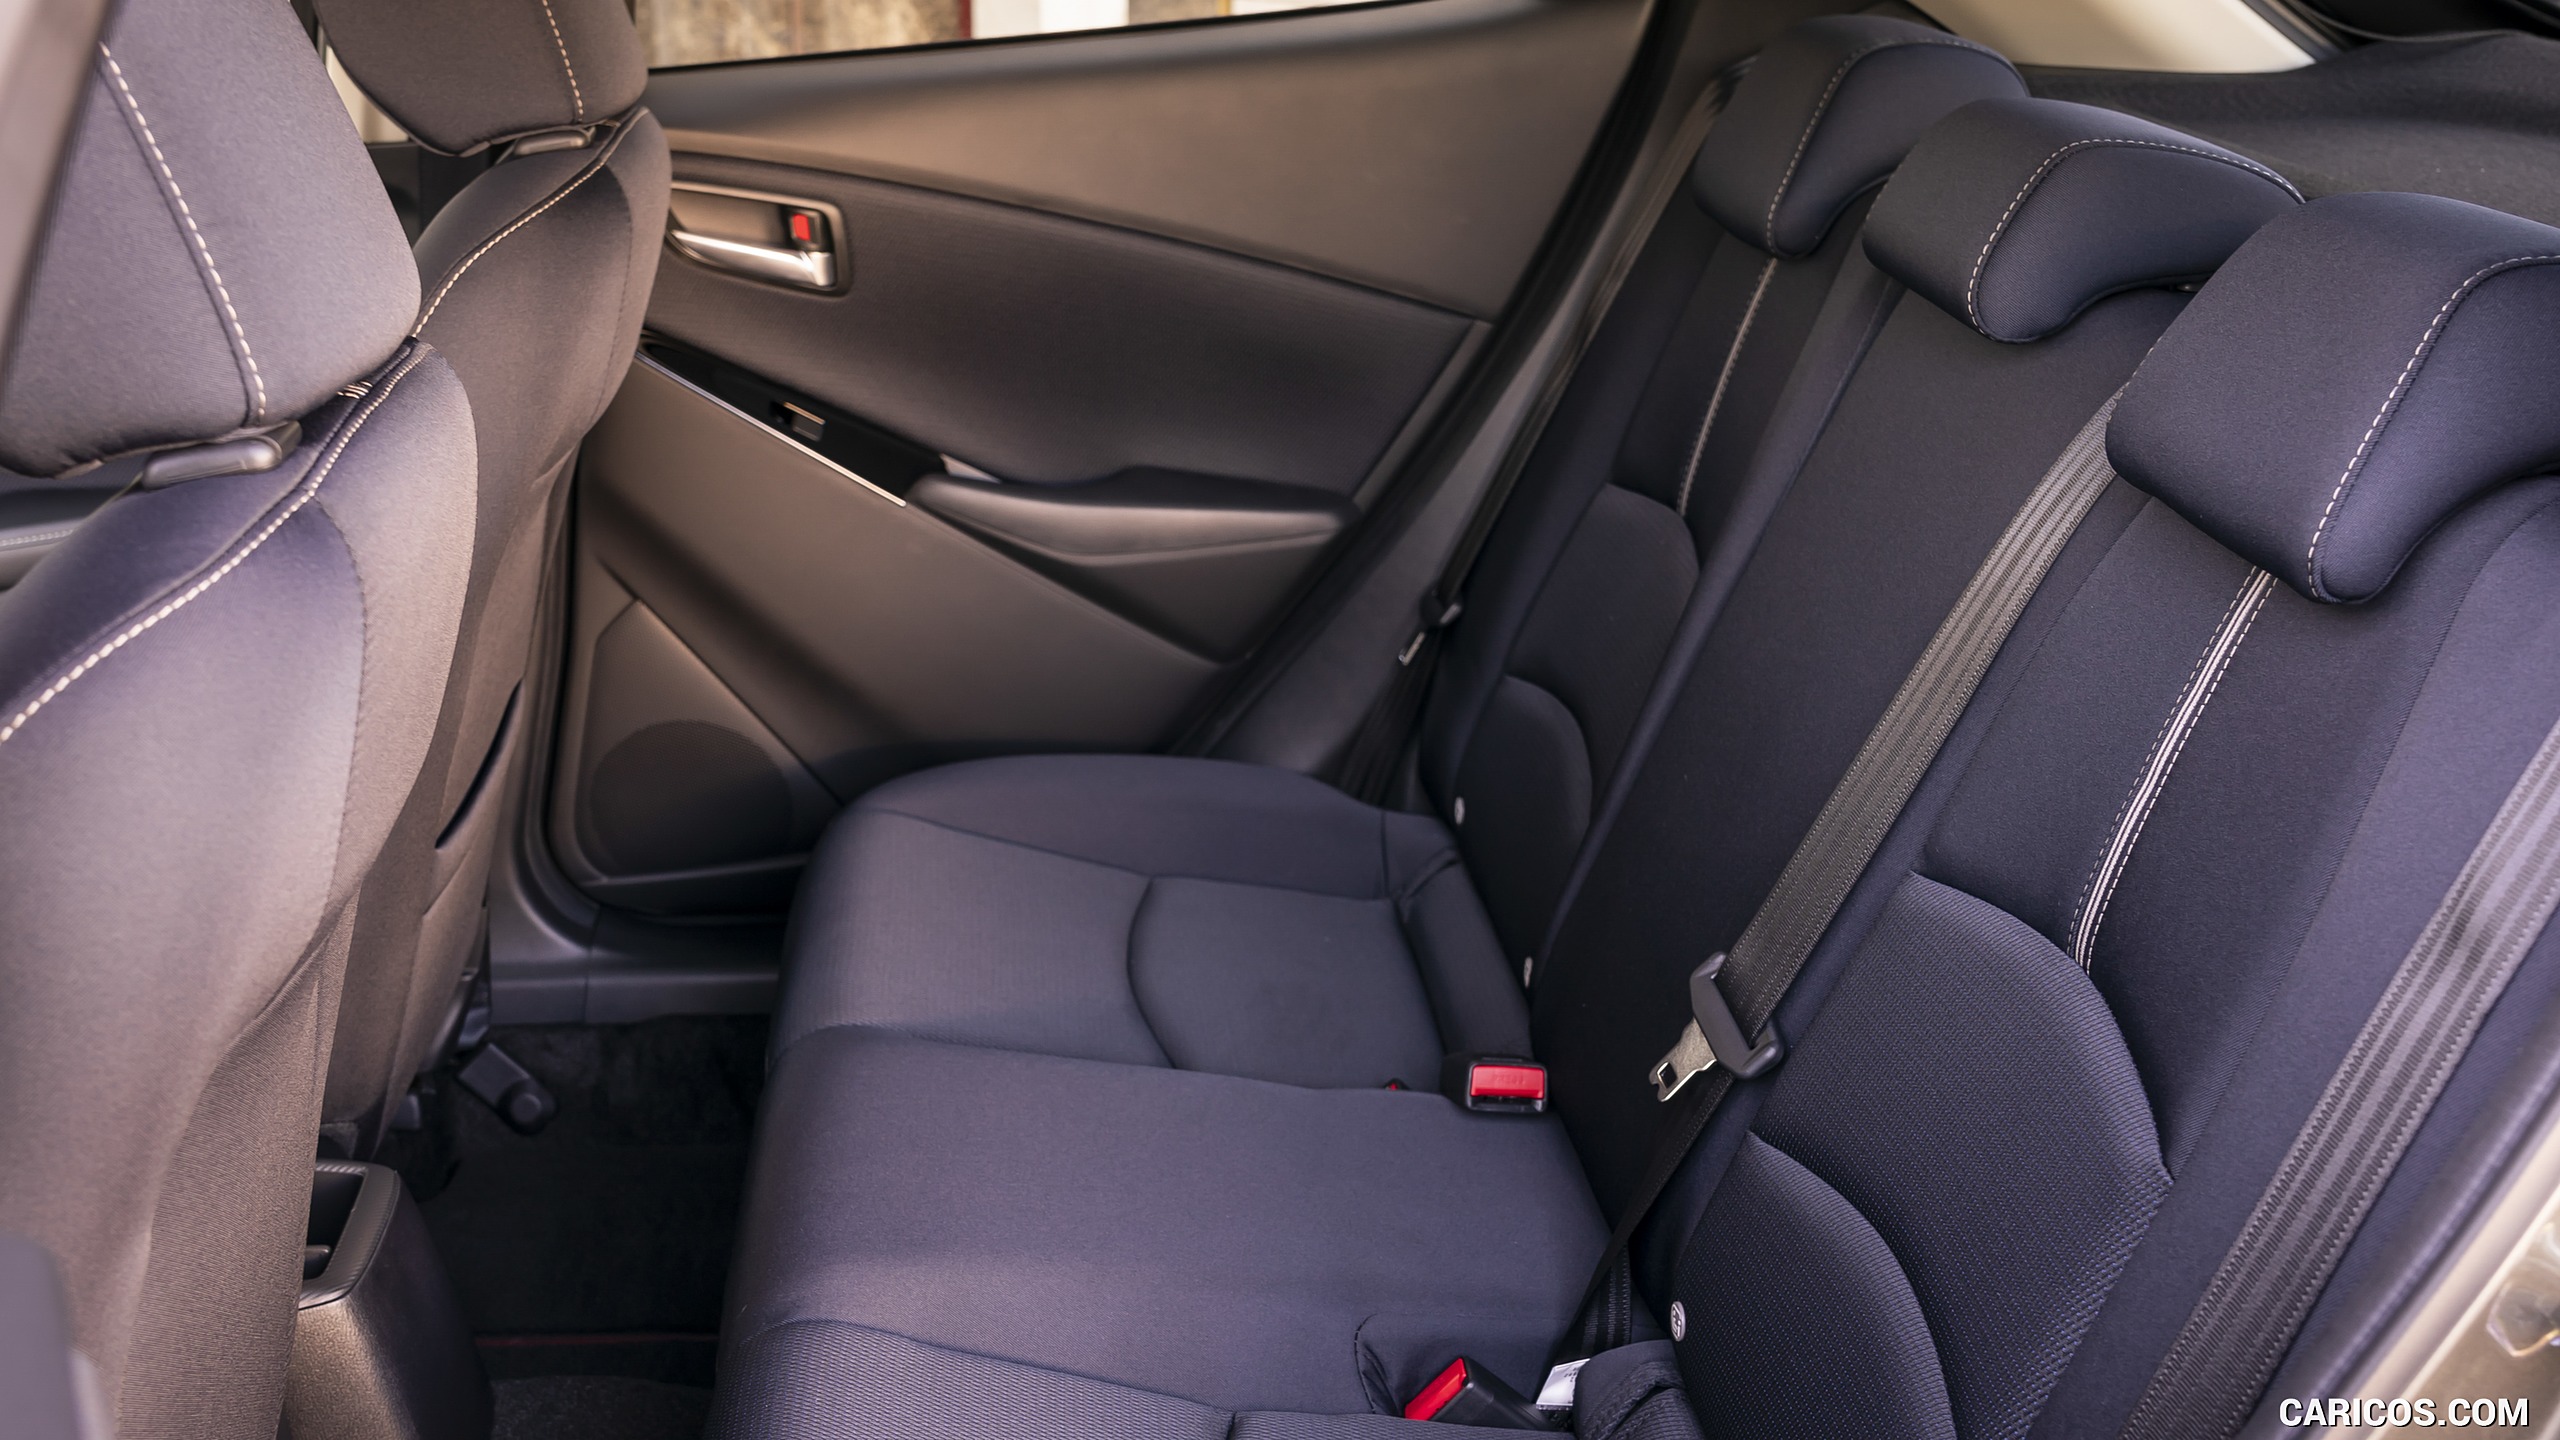 2020 Mazda2 (Color: Machine Grey) - Interior, Rear Seats, #205 of 210